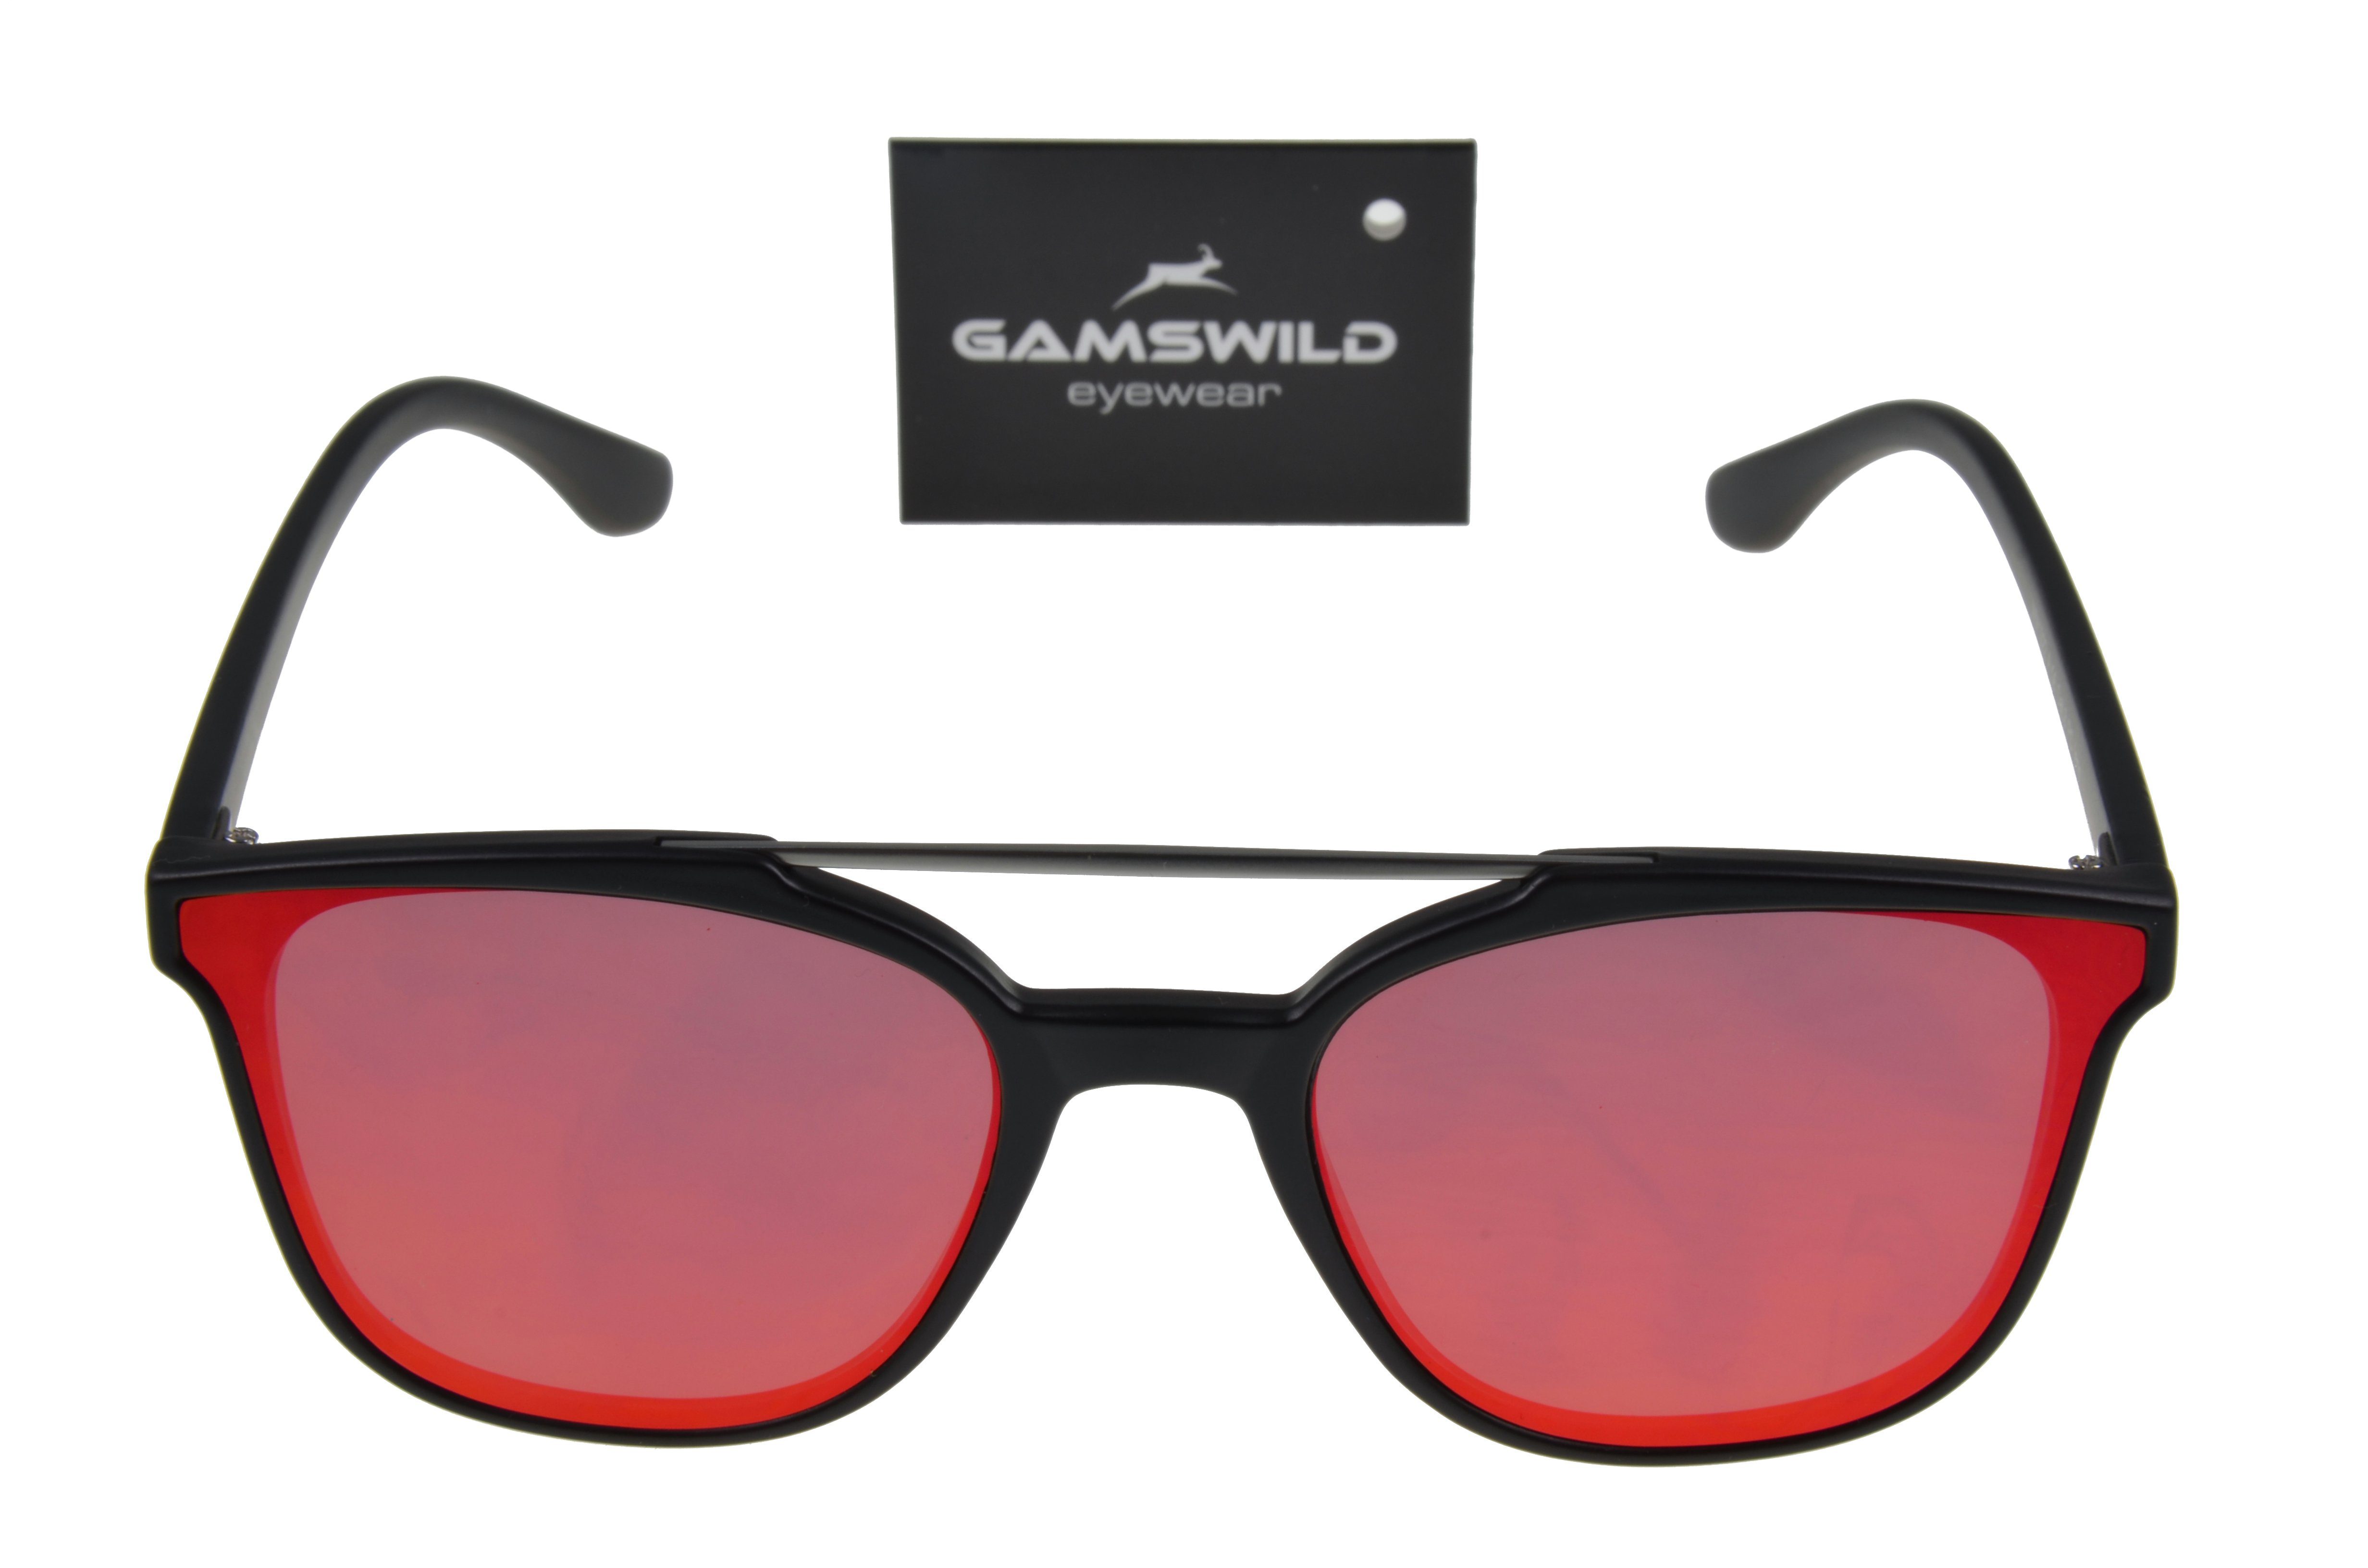 Herren Quersteg Brille WM1022 violett, Mode Sonnenbrille rot, Gamswild silber gold, Cat-Eye, Damen GAMSSTYLE Unisex